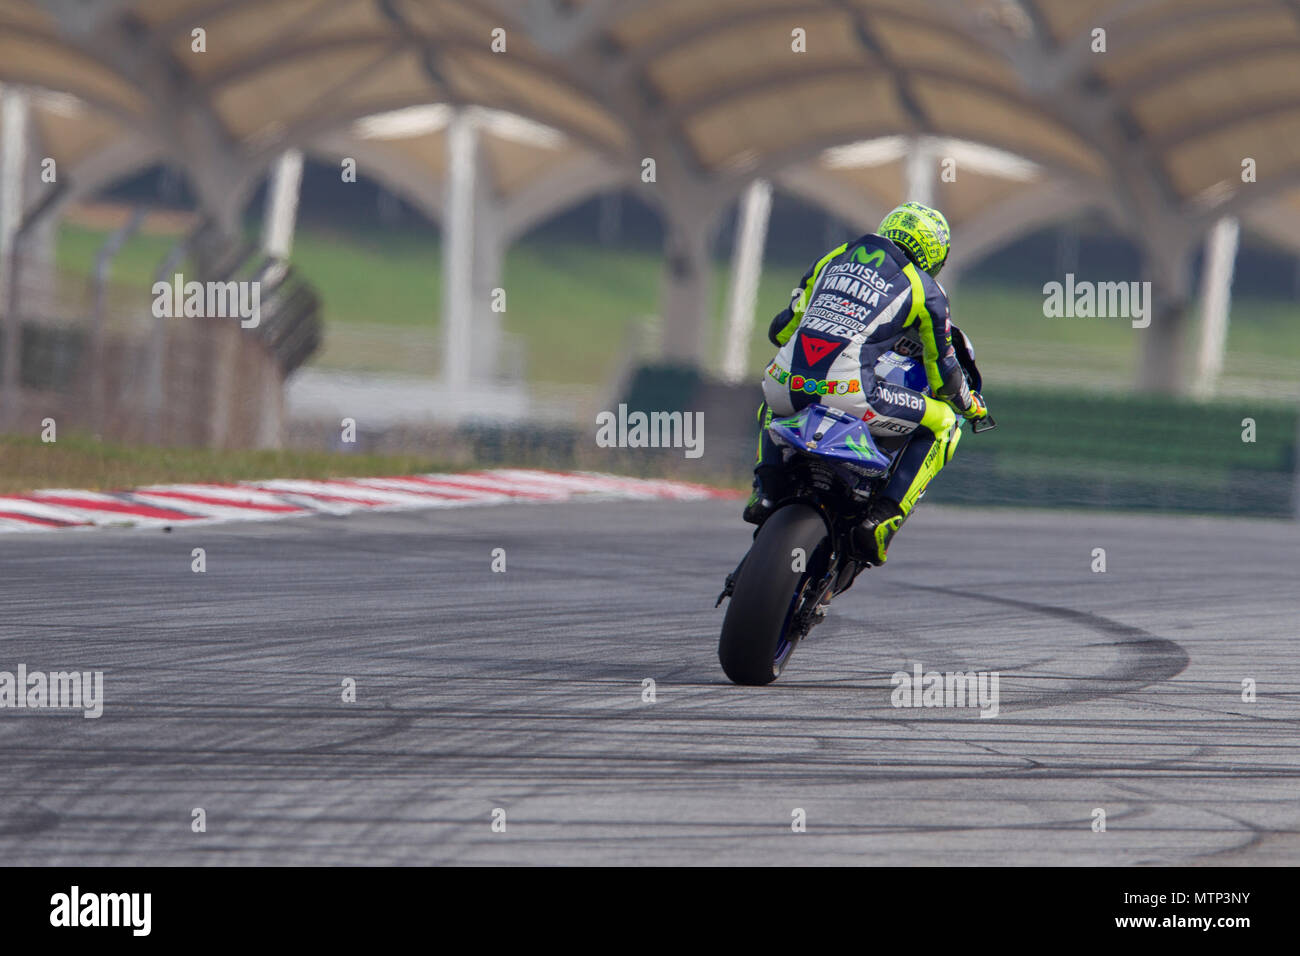 Neuf fois Champion du monde Valentino Rossi à califourchon sur sa Yamaha M1 Movistar vélo à l'usine d'hiver officiels MotoGP test à Sepang Circuit en Malaisie. Banque D'Images